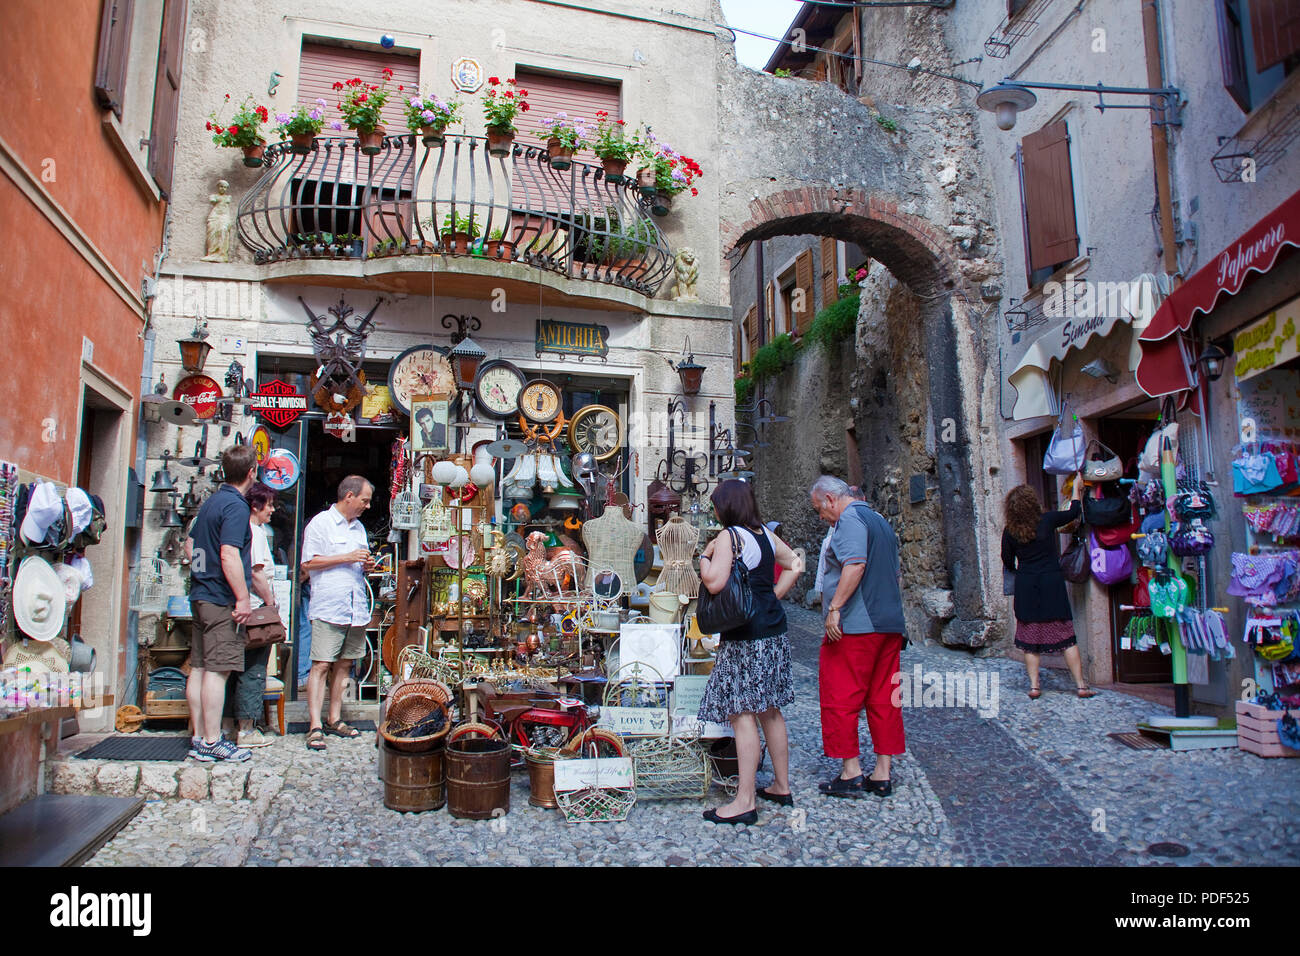 Los turistas en una tienda de souvenirs, antigua ciudad de Malcesine, provincia de Verona, Lago de Garda, Lombardía, Italia Foto de stock